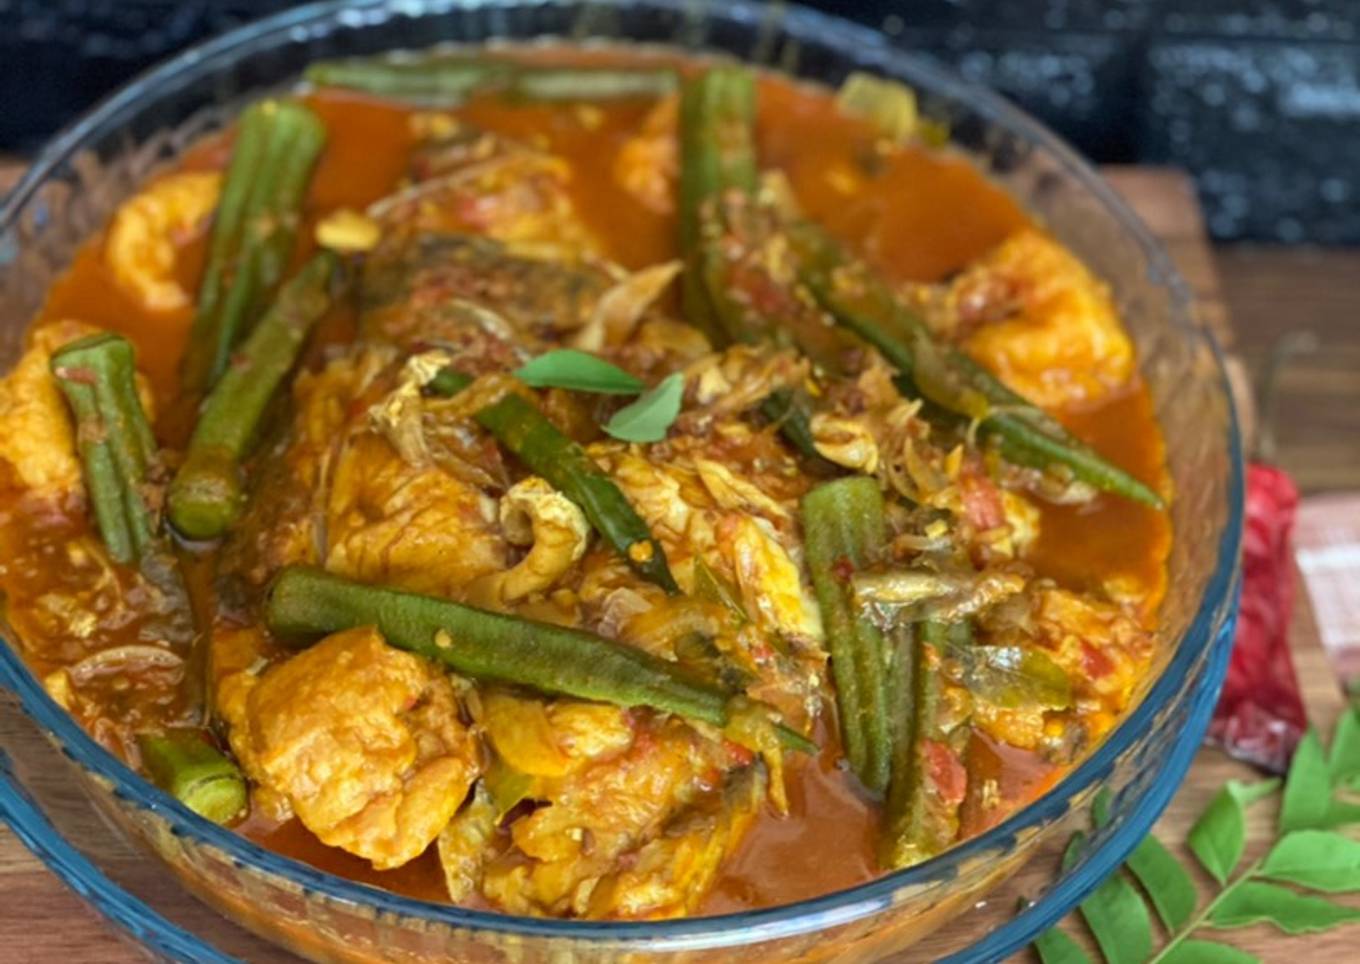 🇿🇲 Zambian boil curry fish